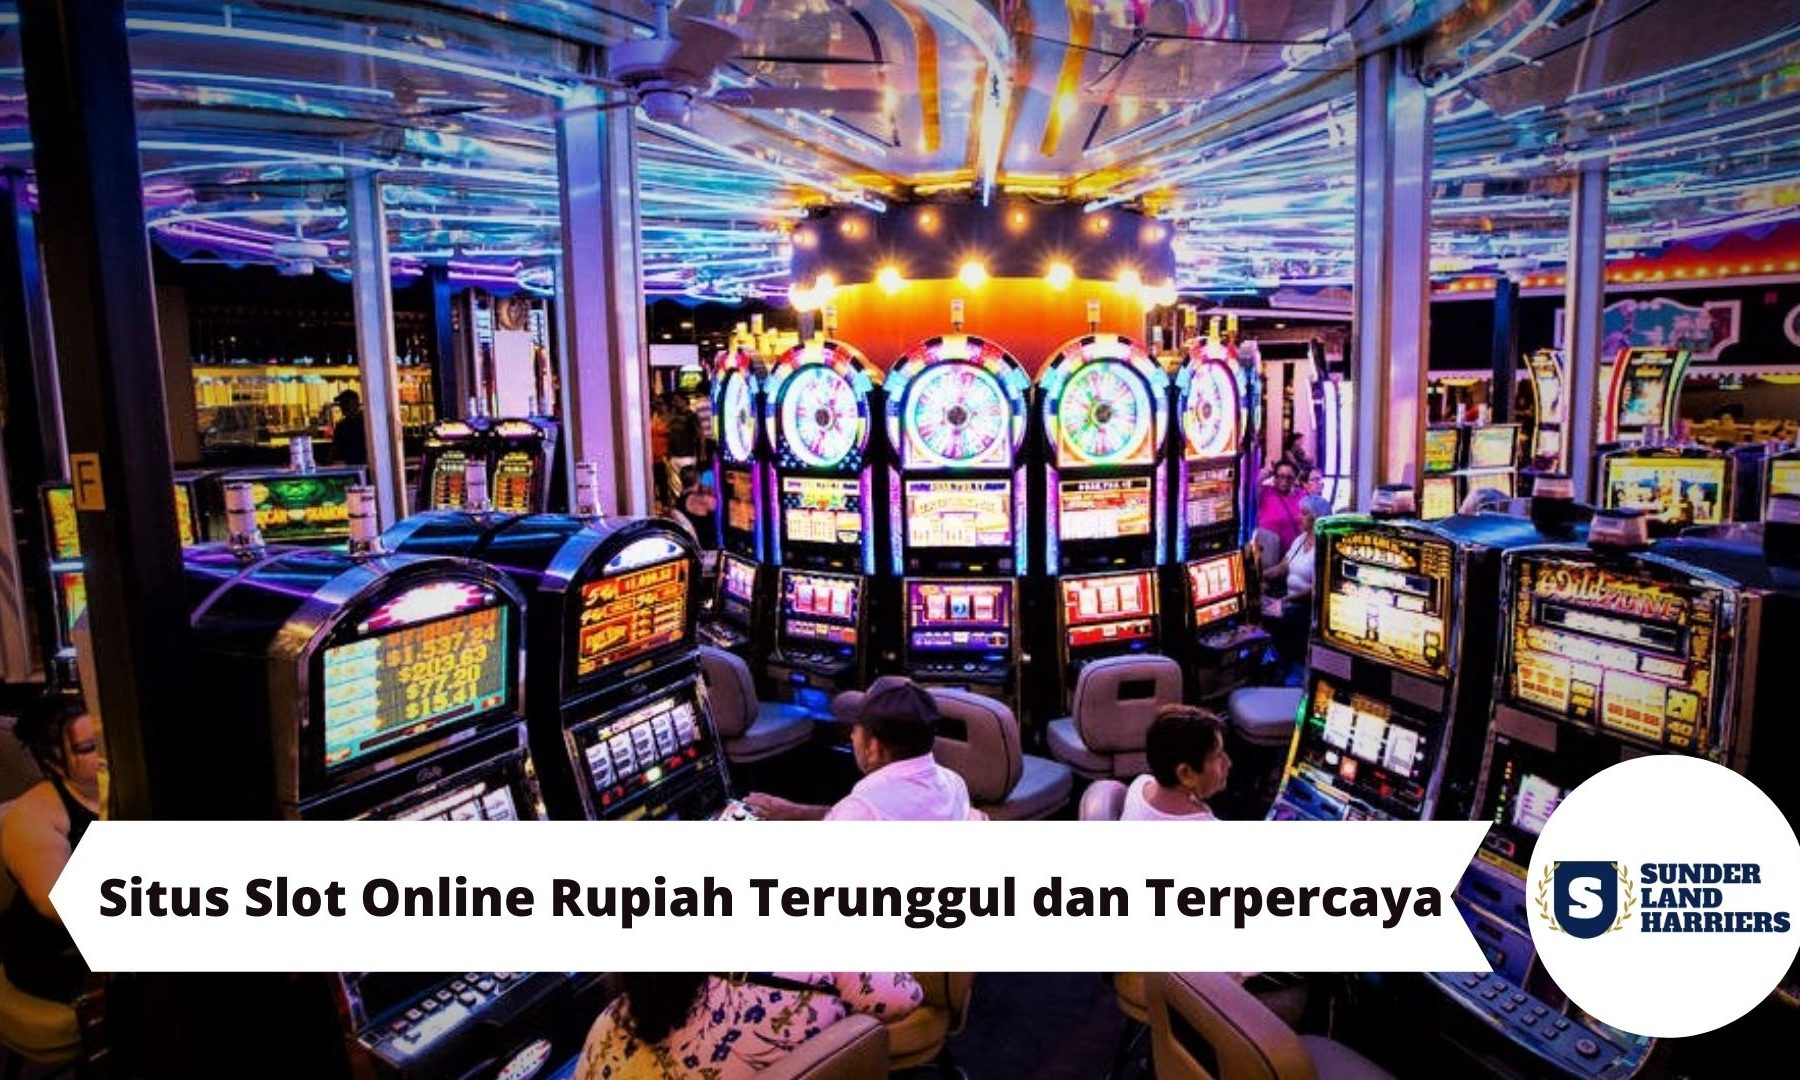 Situs Slot Online Rupiah Terunggul dan Terpercaya